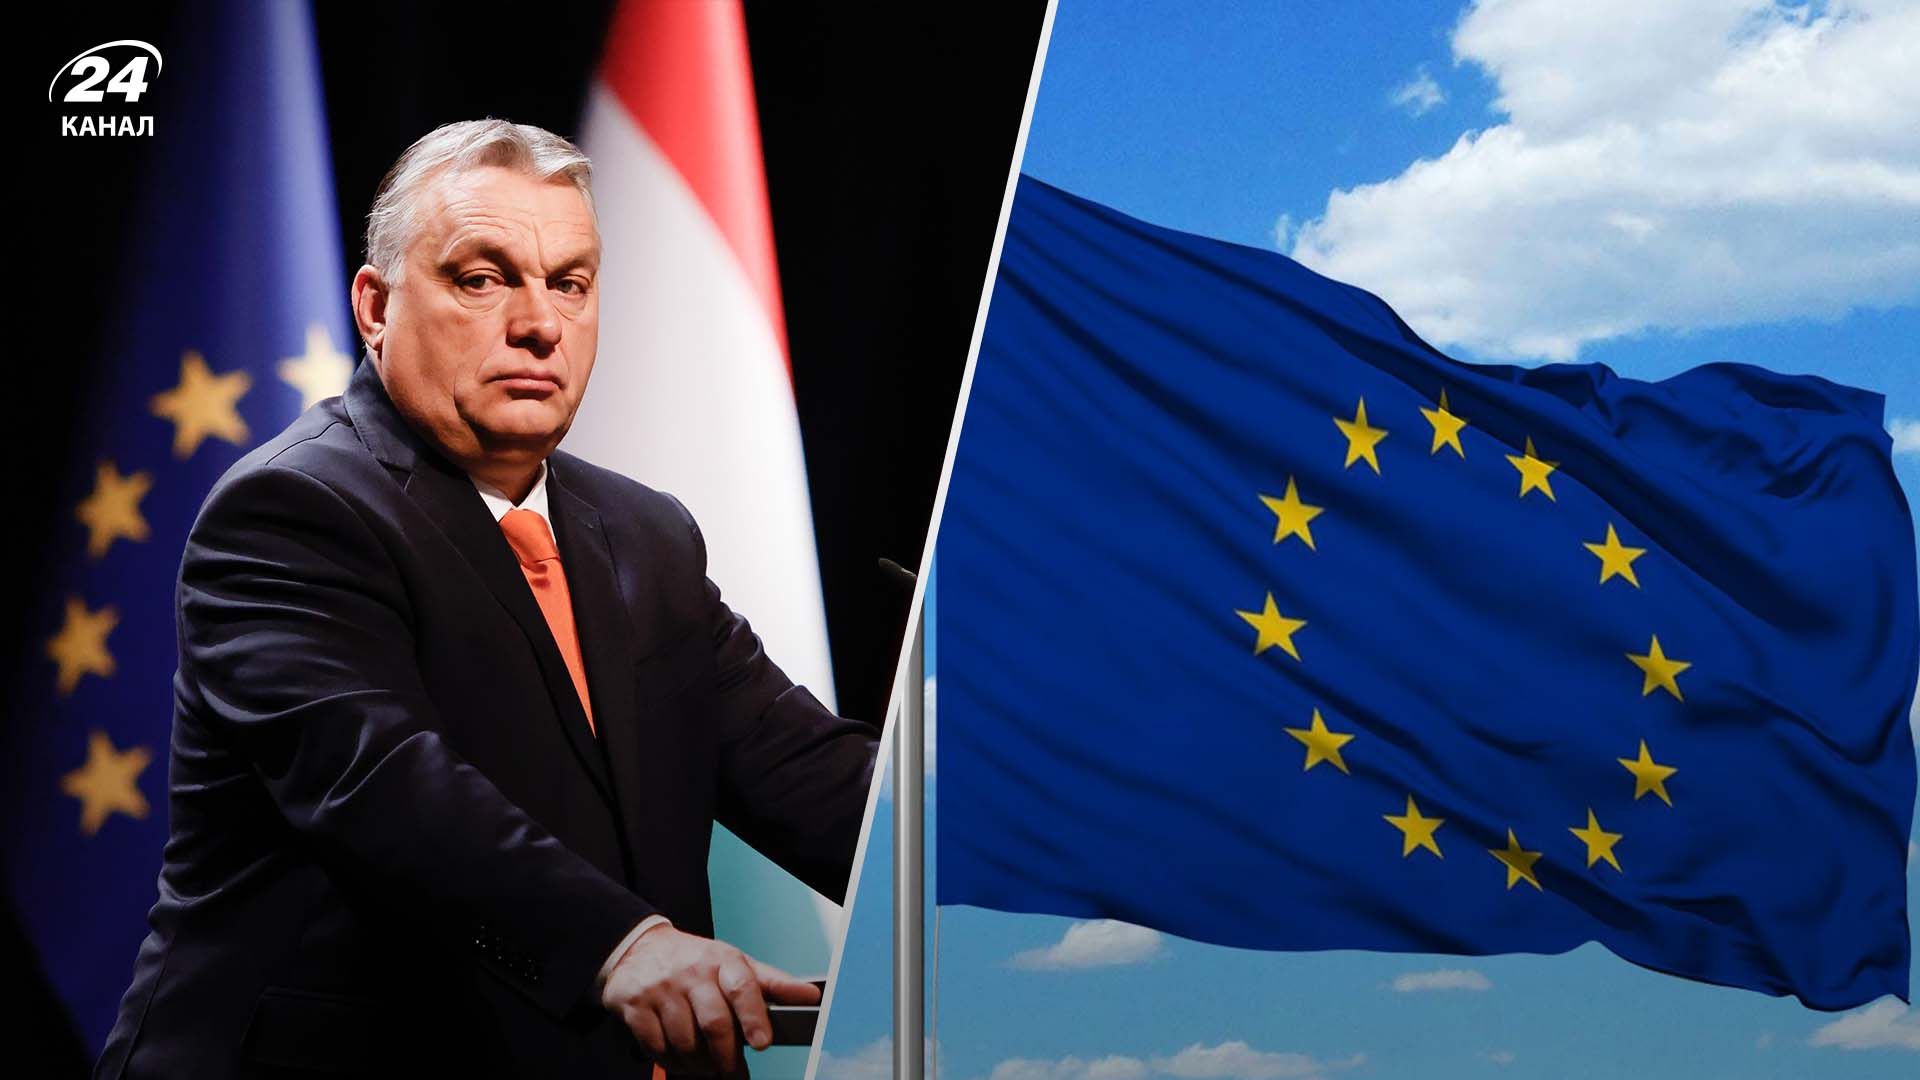 20 мільярдів євро для Угорщини залишаються заблокованими 